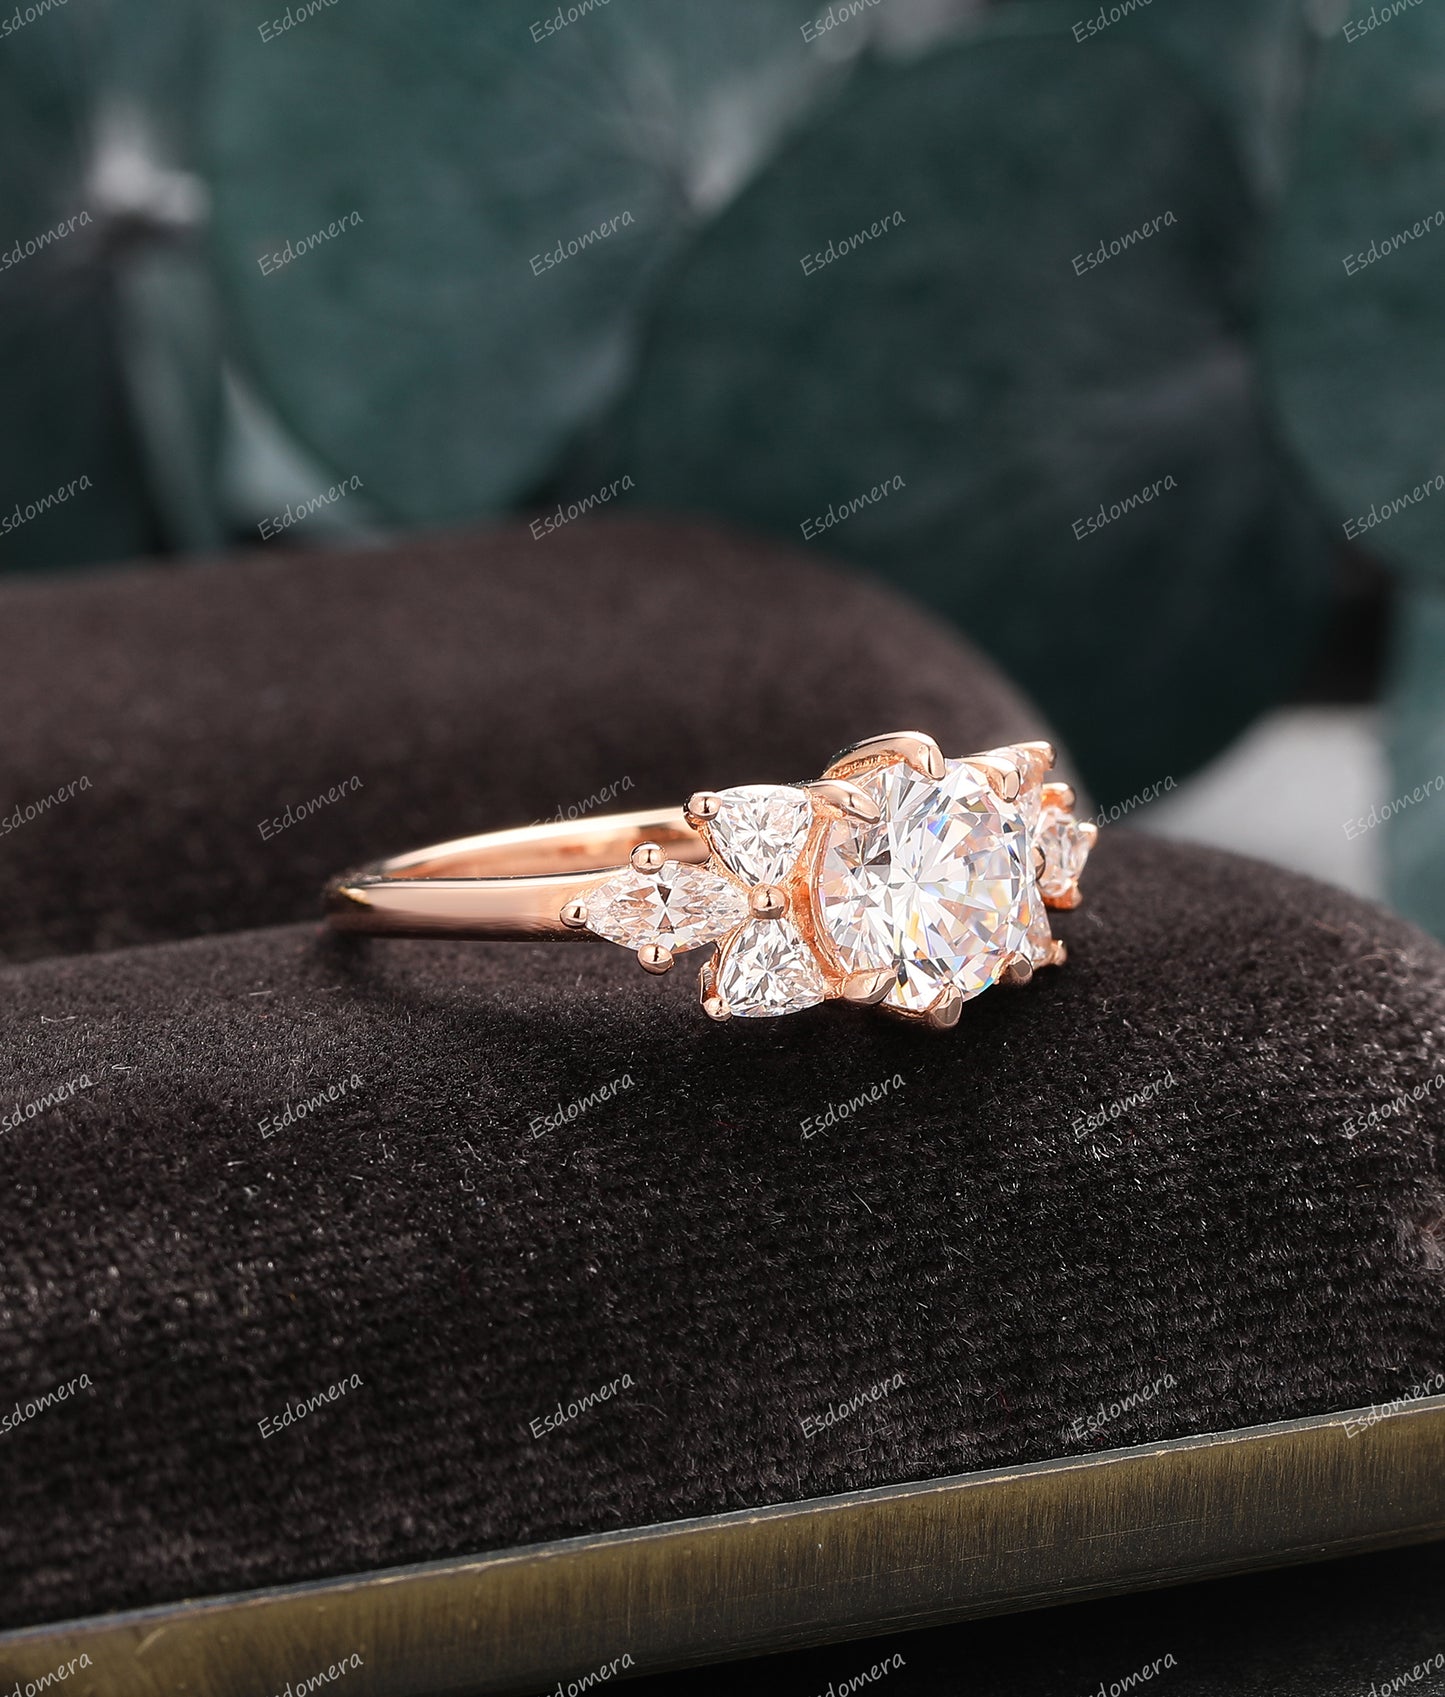 14k Rose Gold Promise Ring, Round 1.25CT Moissanite Engagement Ring, 7 Stone Moissanite Ring, Dainty Ring For Her